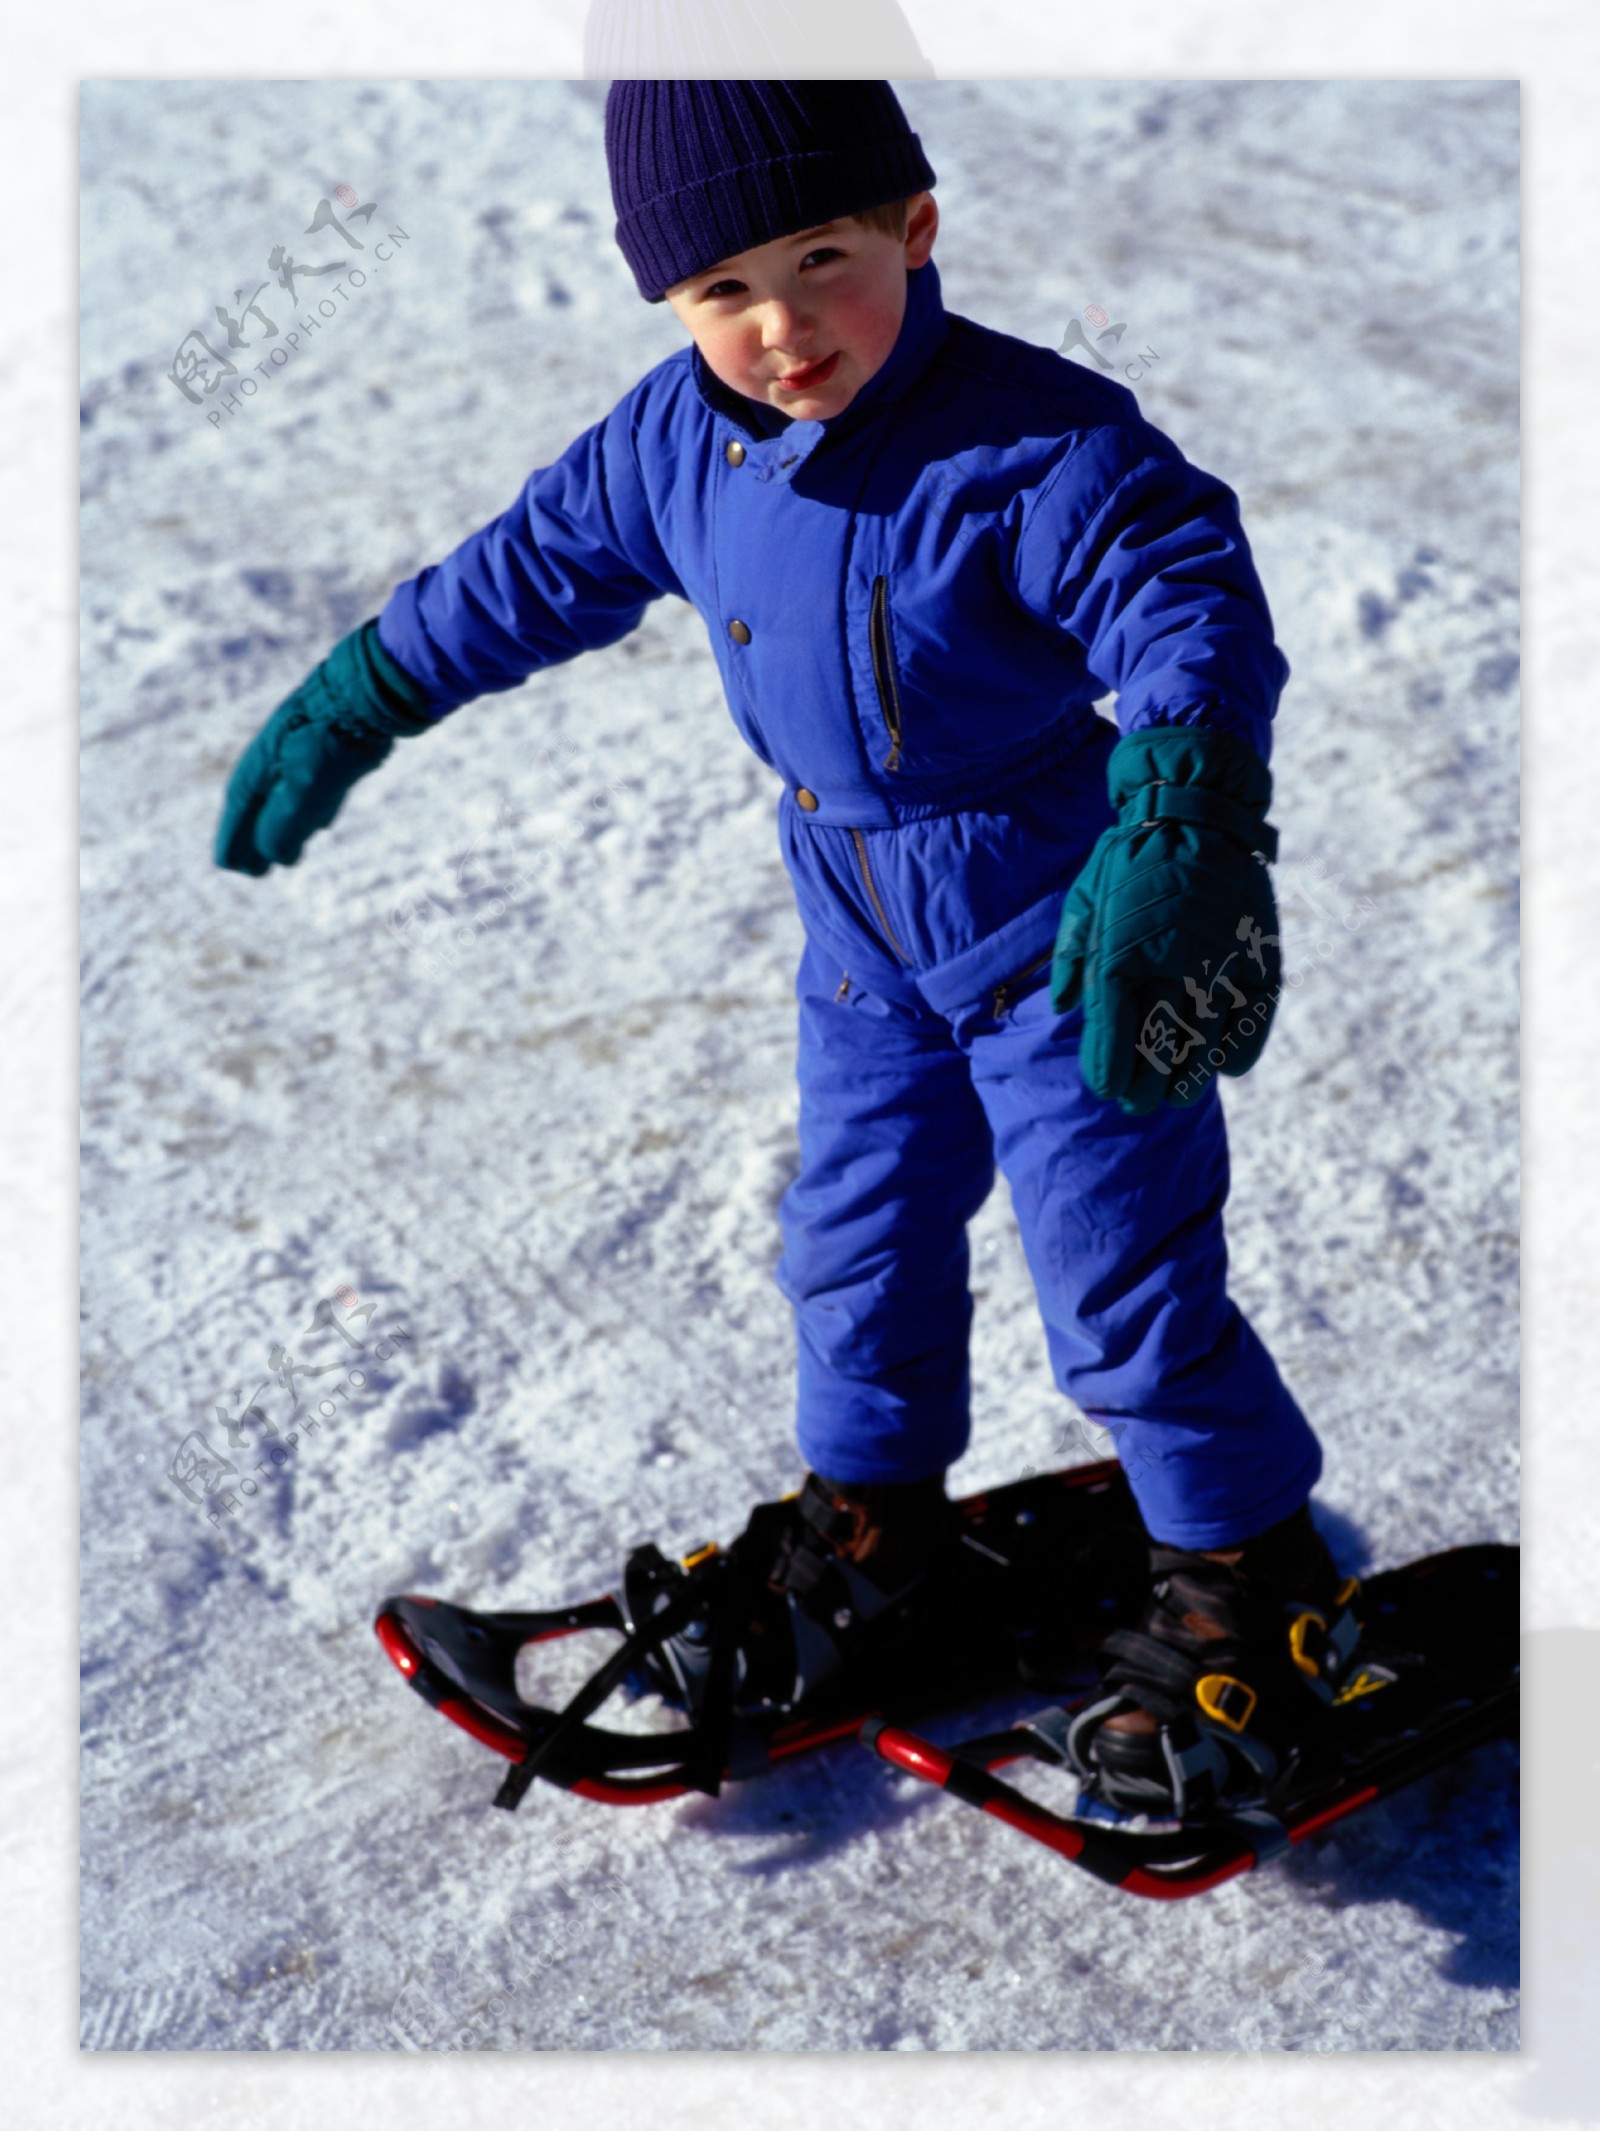 正在滑雪的小男孩